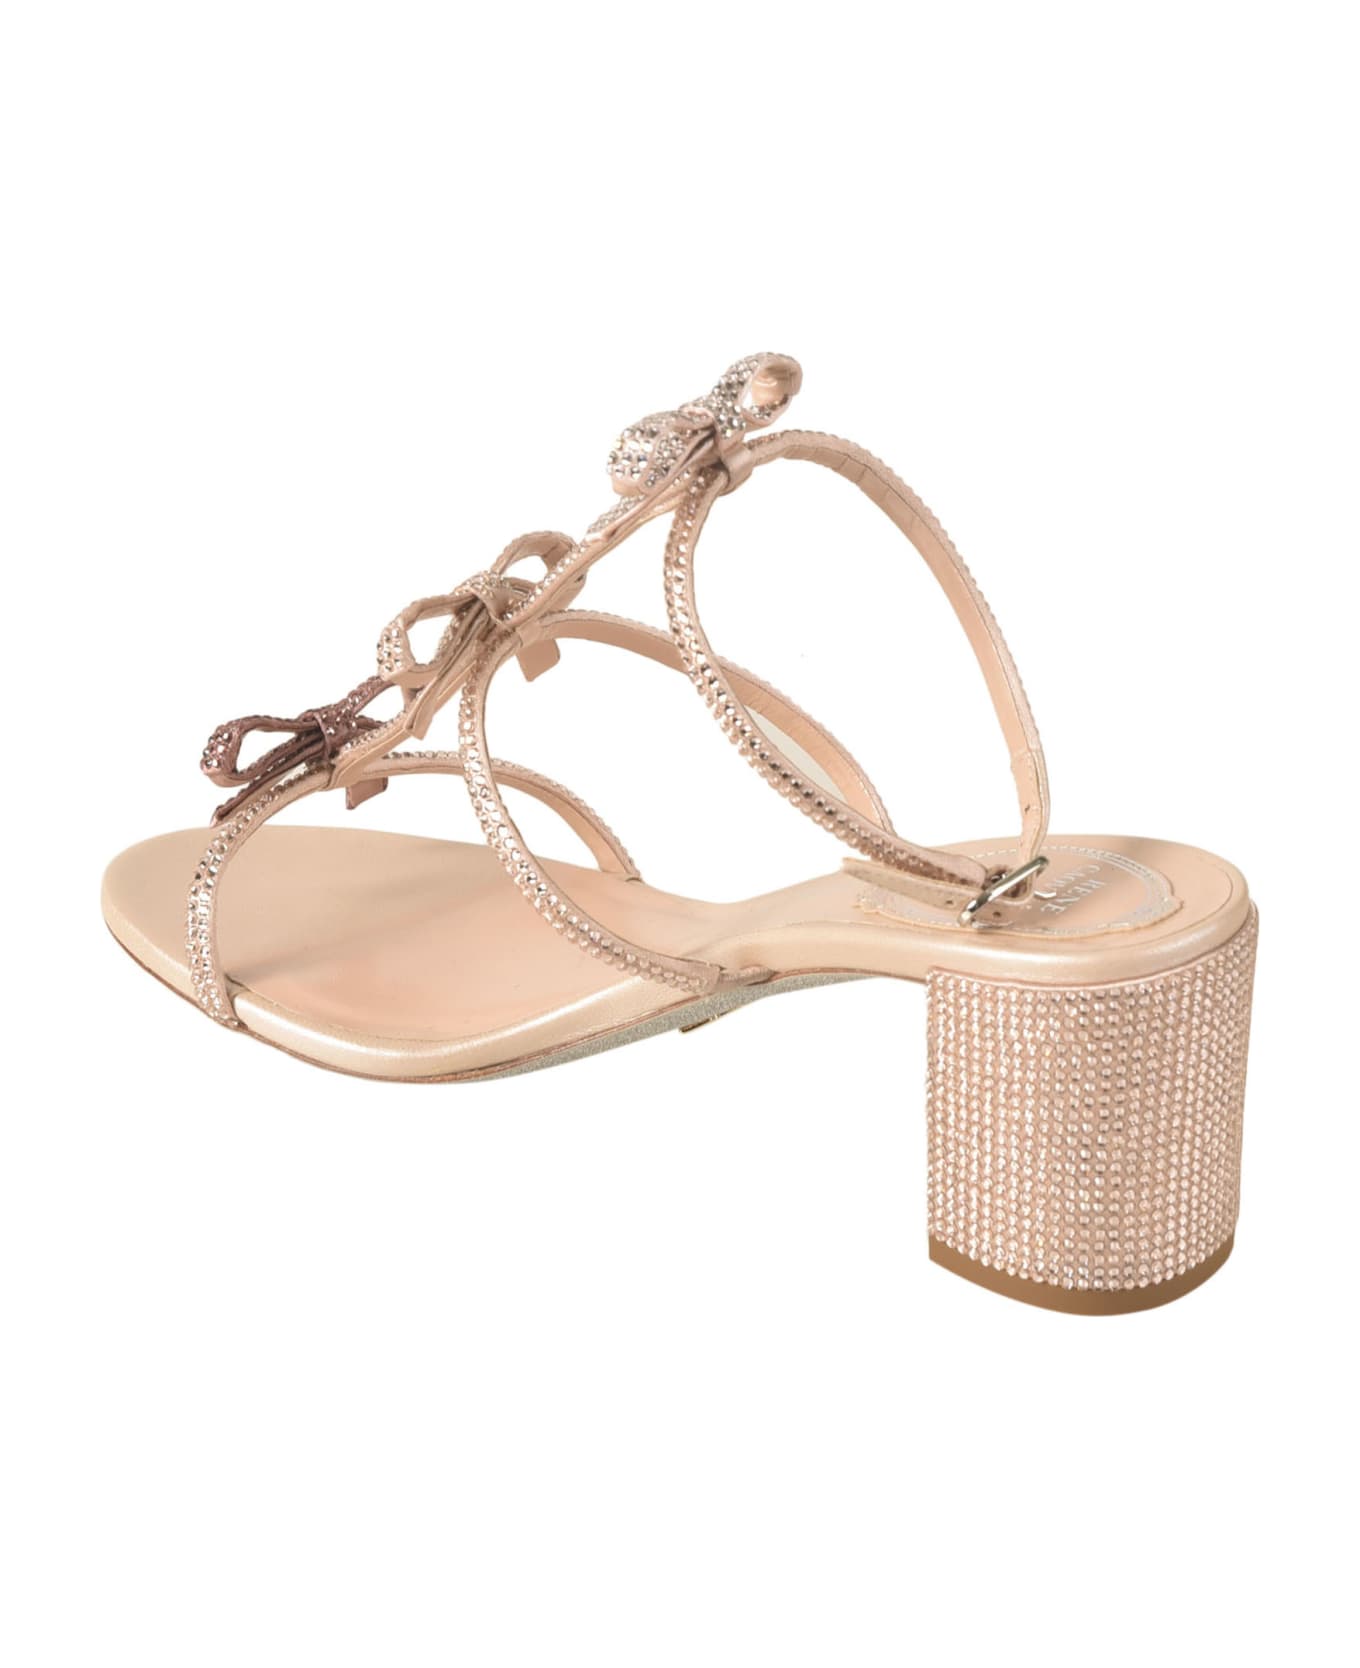 René Caovilla Block Heel Crystal Embellished Sandals - Nude サンダル